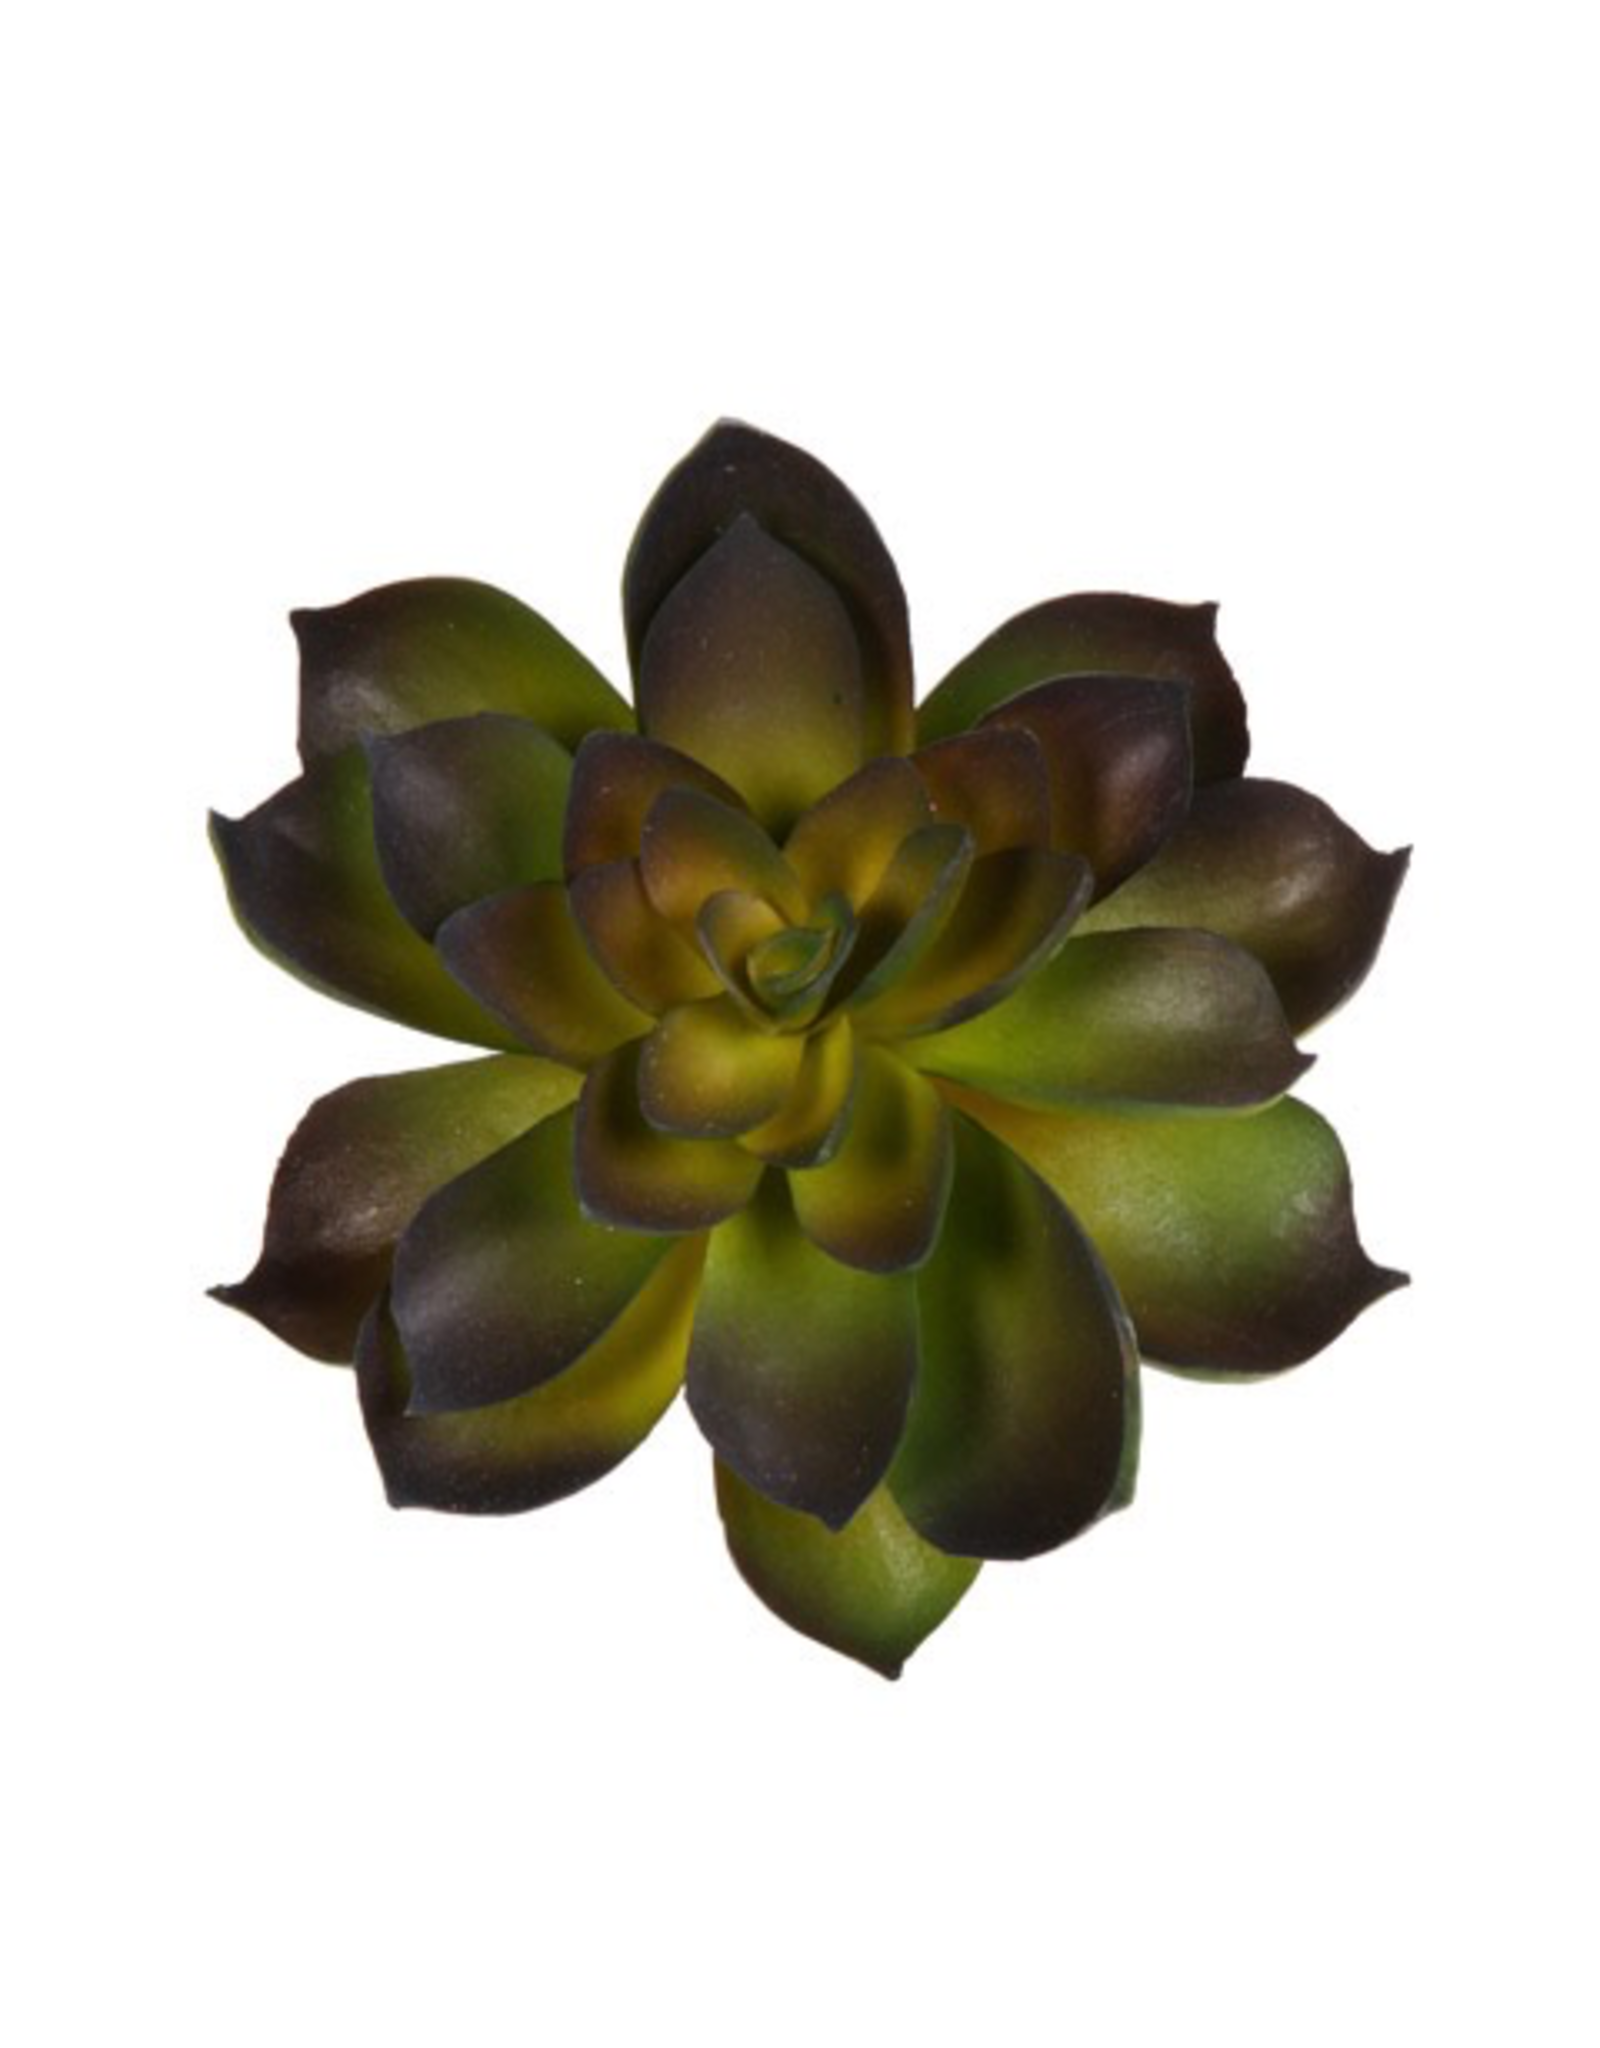 Darice Faux Succulent Green and Dark Purple Echeveria Rosette 4.5 inch